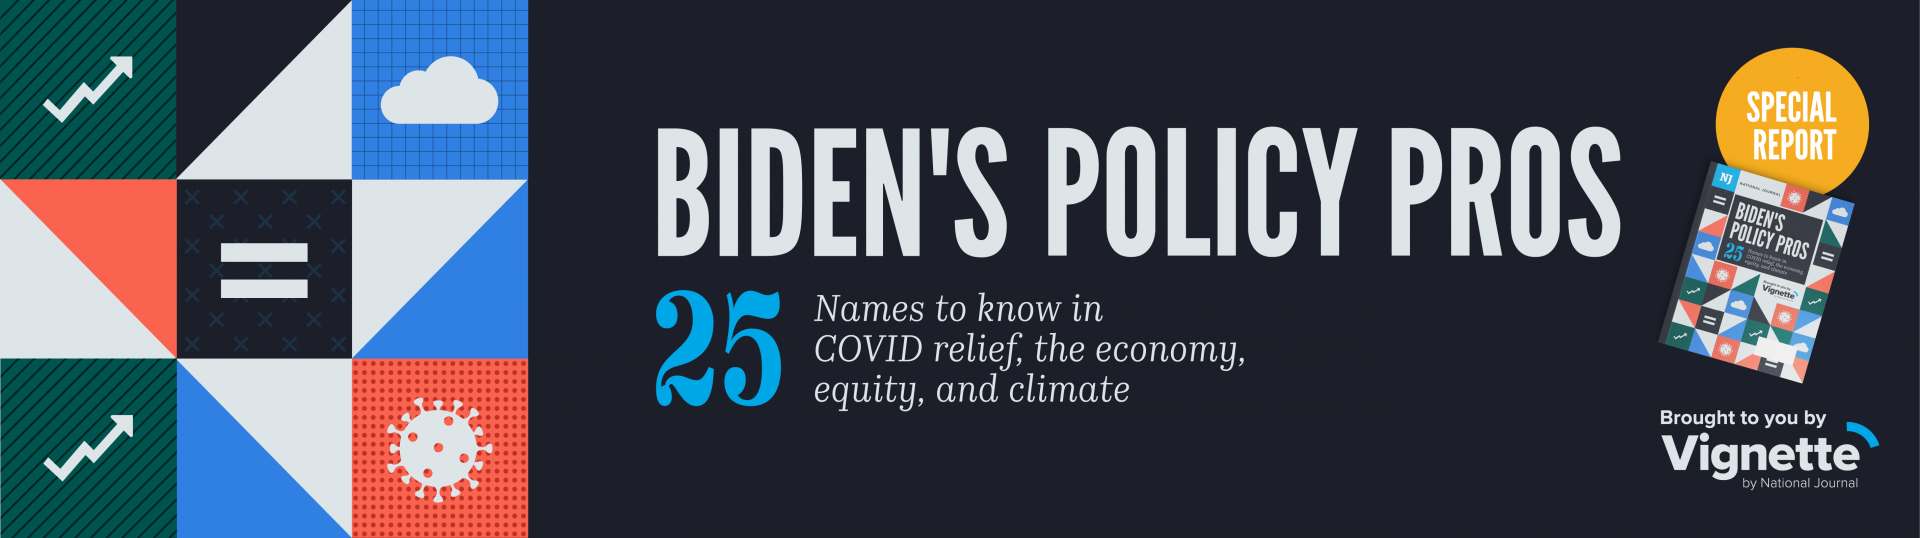 Biden's Policy Pros